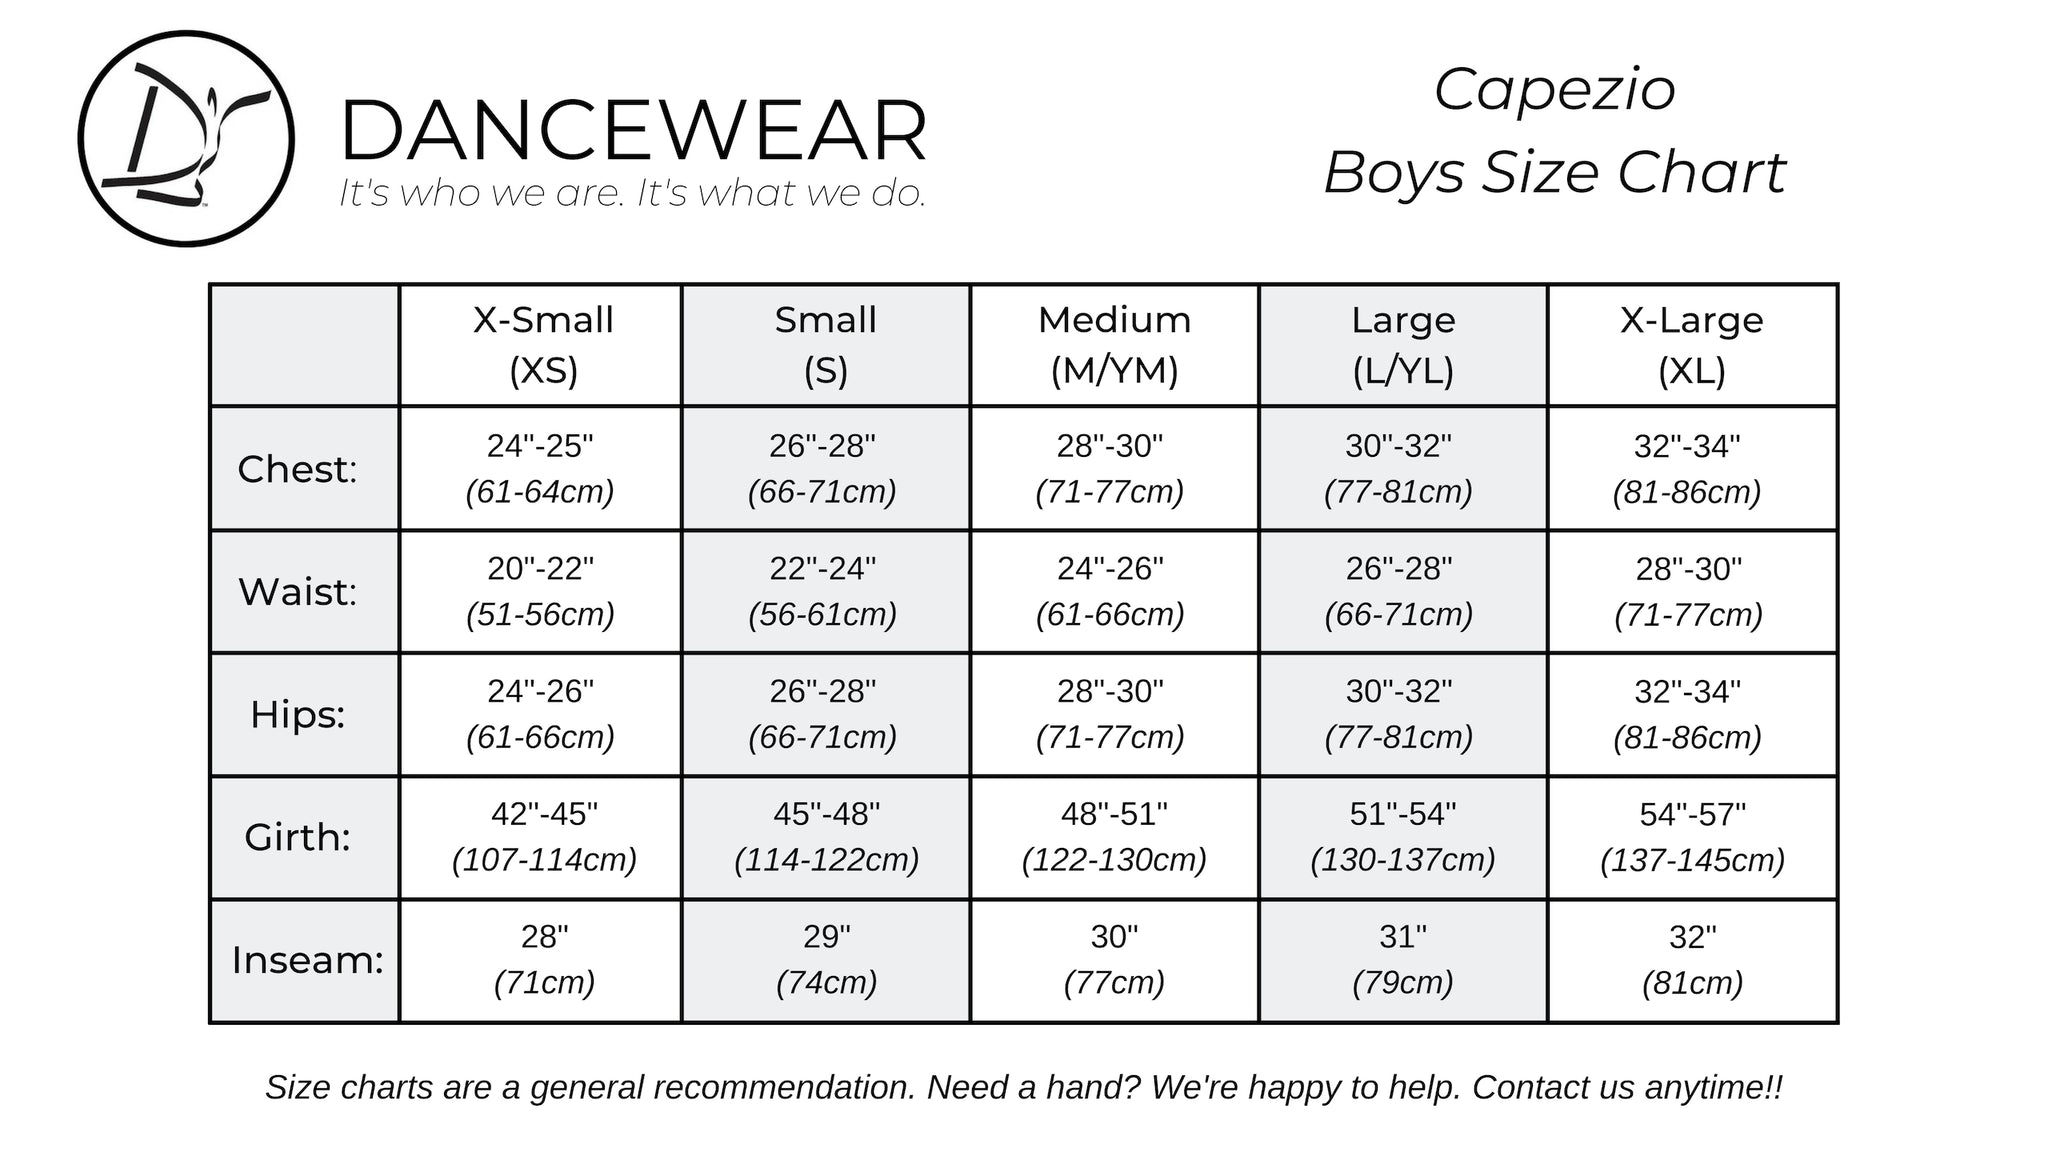 Capezio Boys Size Chart